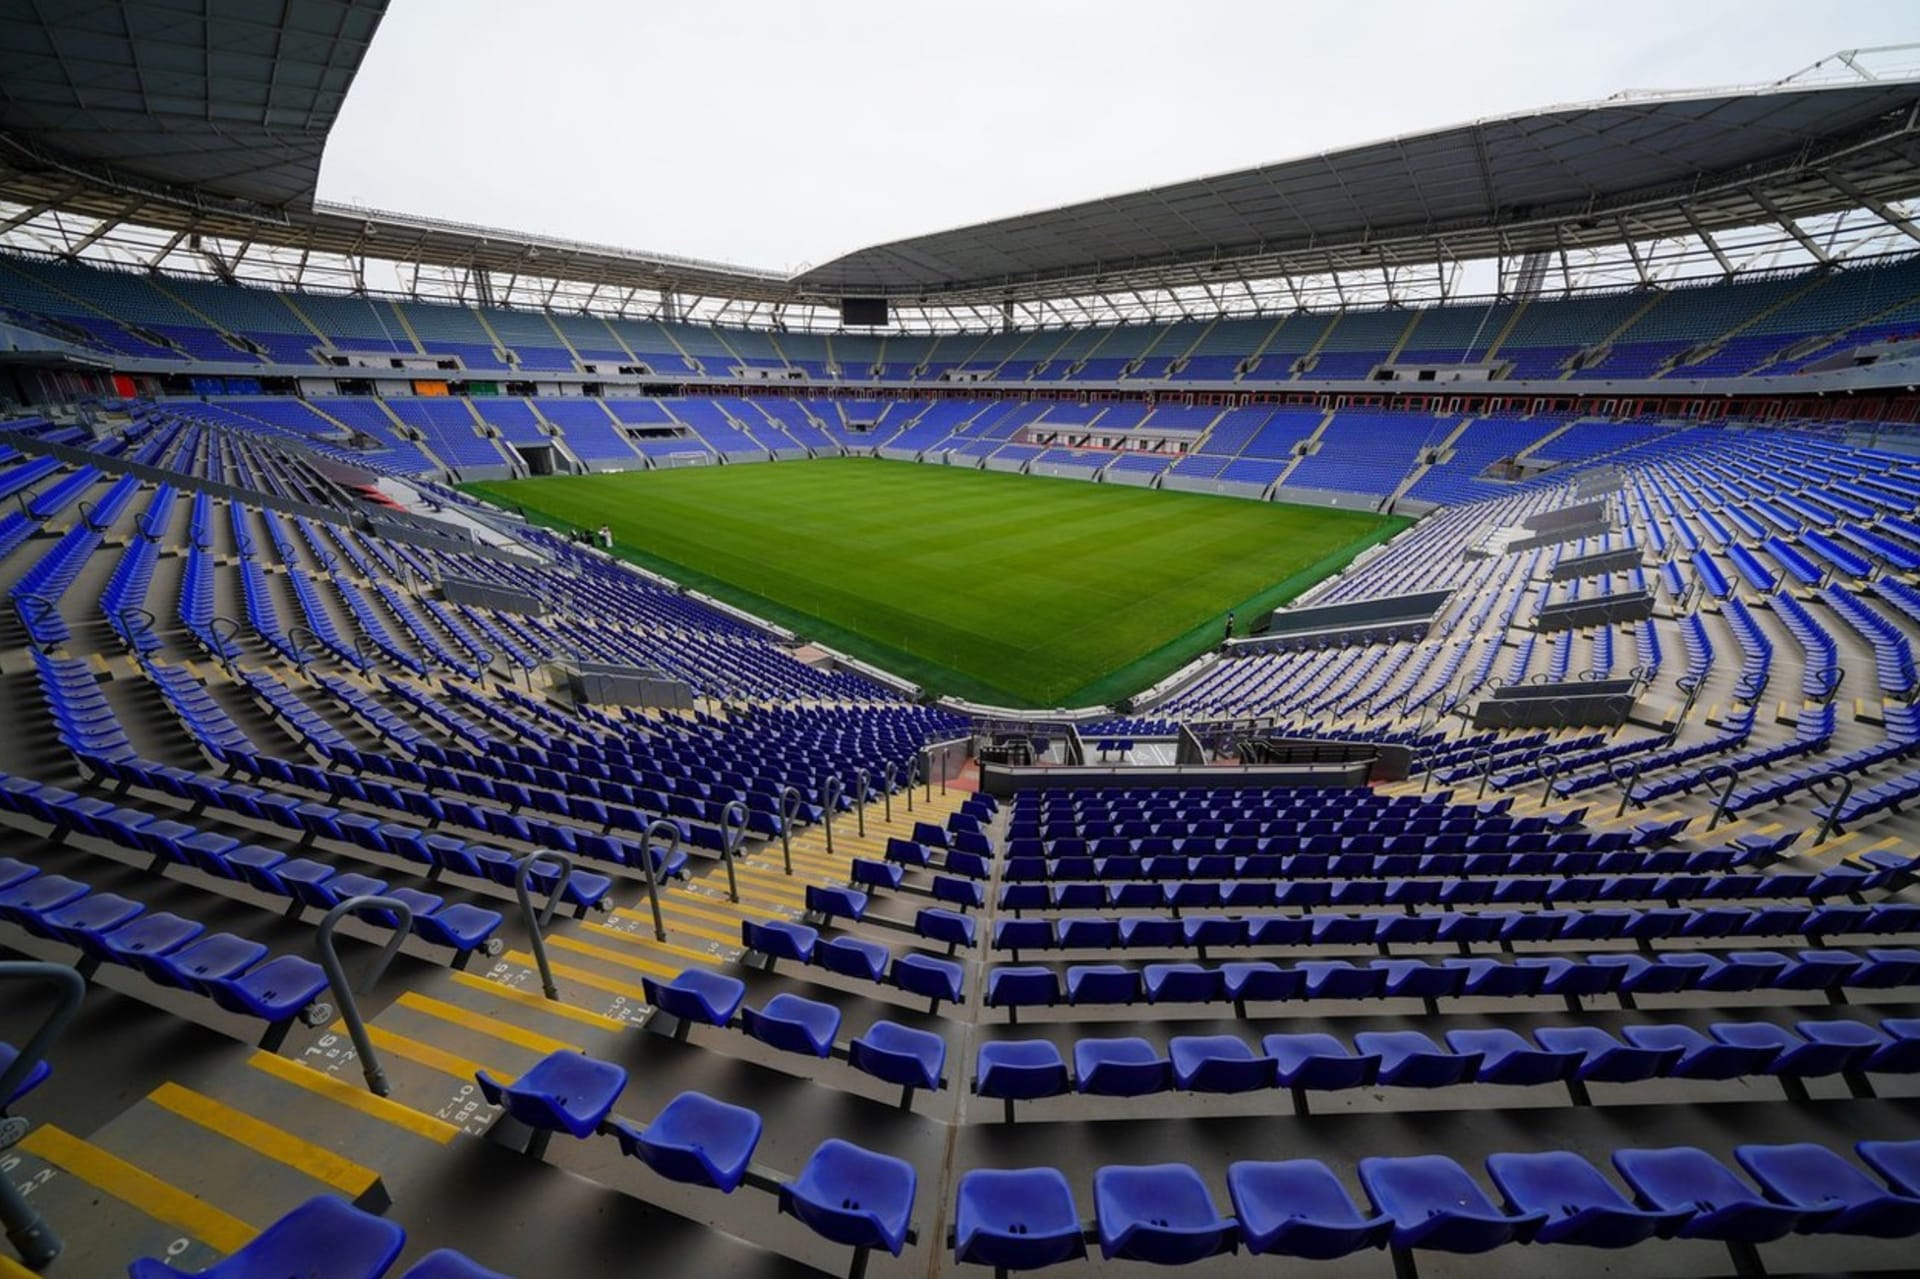 Stadion 974 v Kataru.